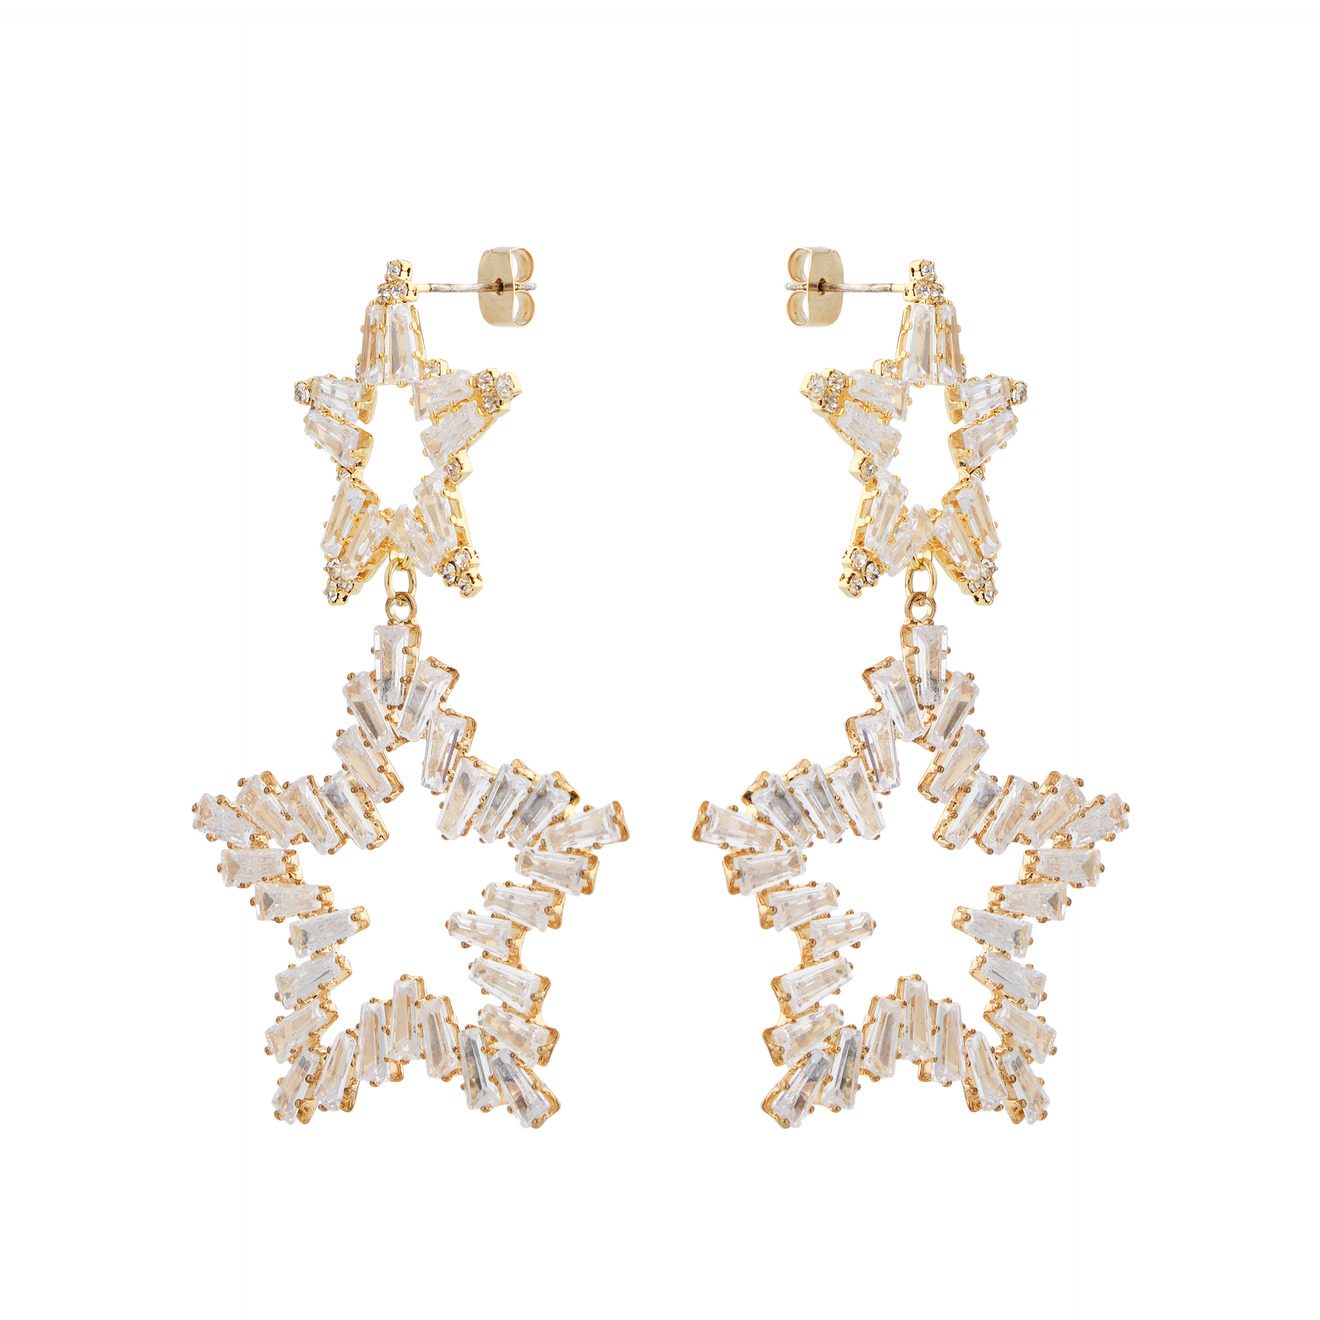 Herald Percy Золотистые серьги из двух звезд с кристаллами lisa smith золотистые серьги из четырех кристаллов